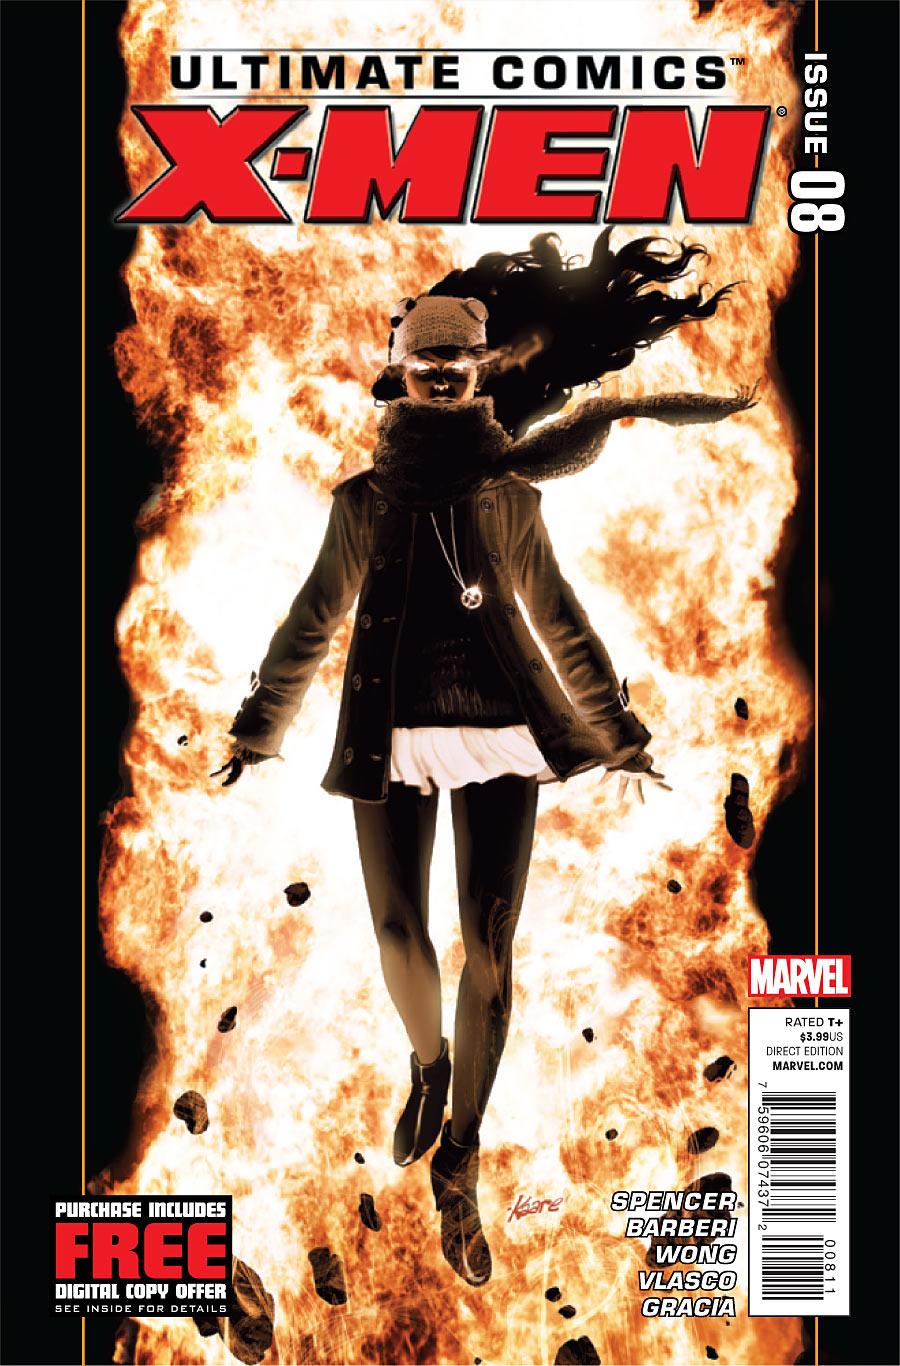 Ultimate Comics X-Men Vol. 1 #8